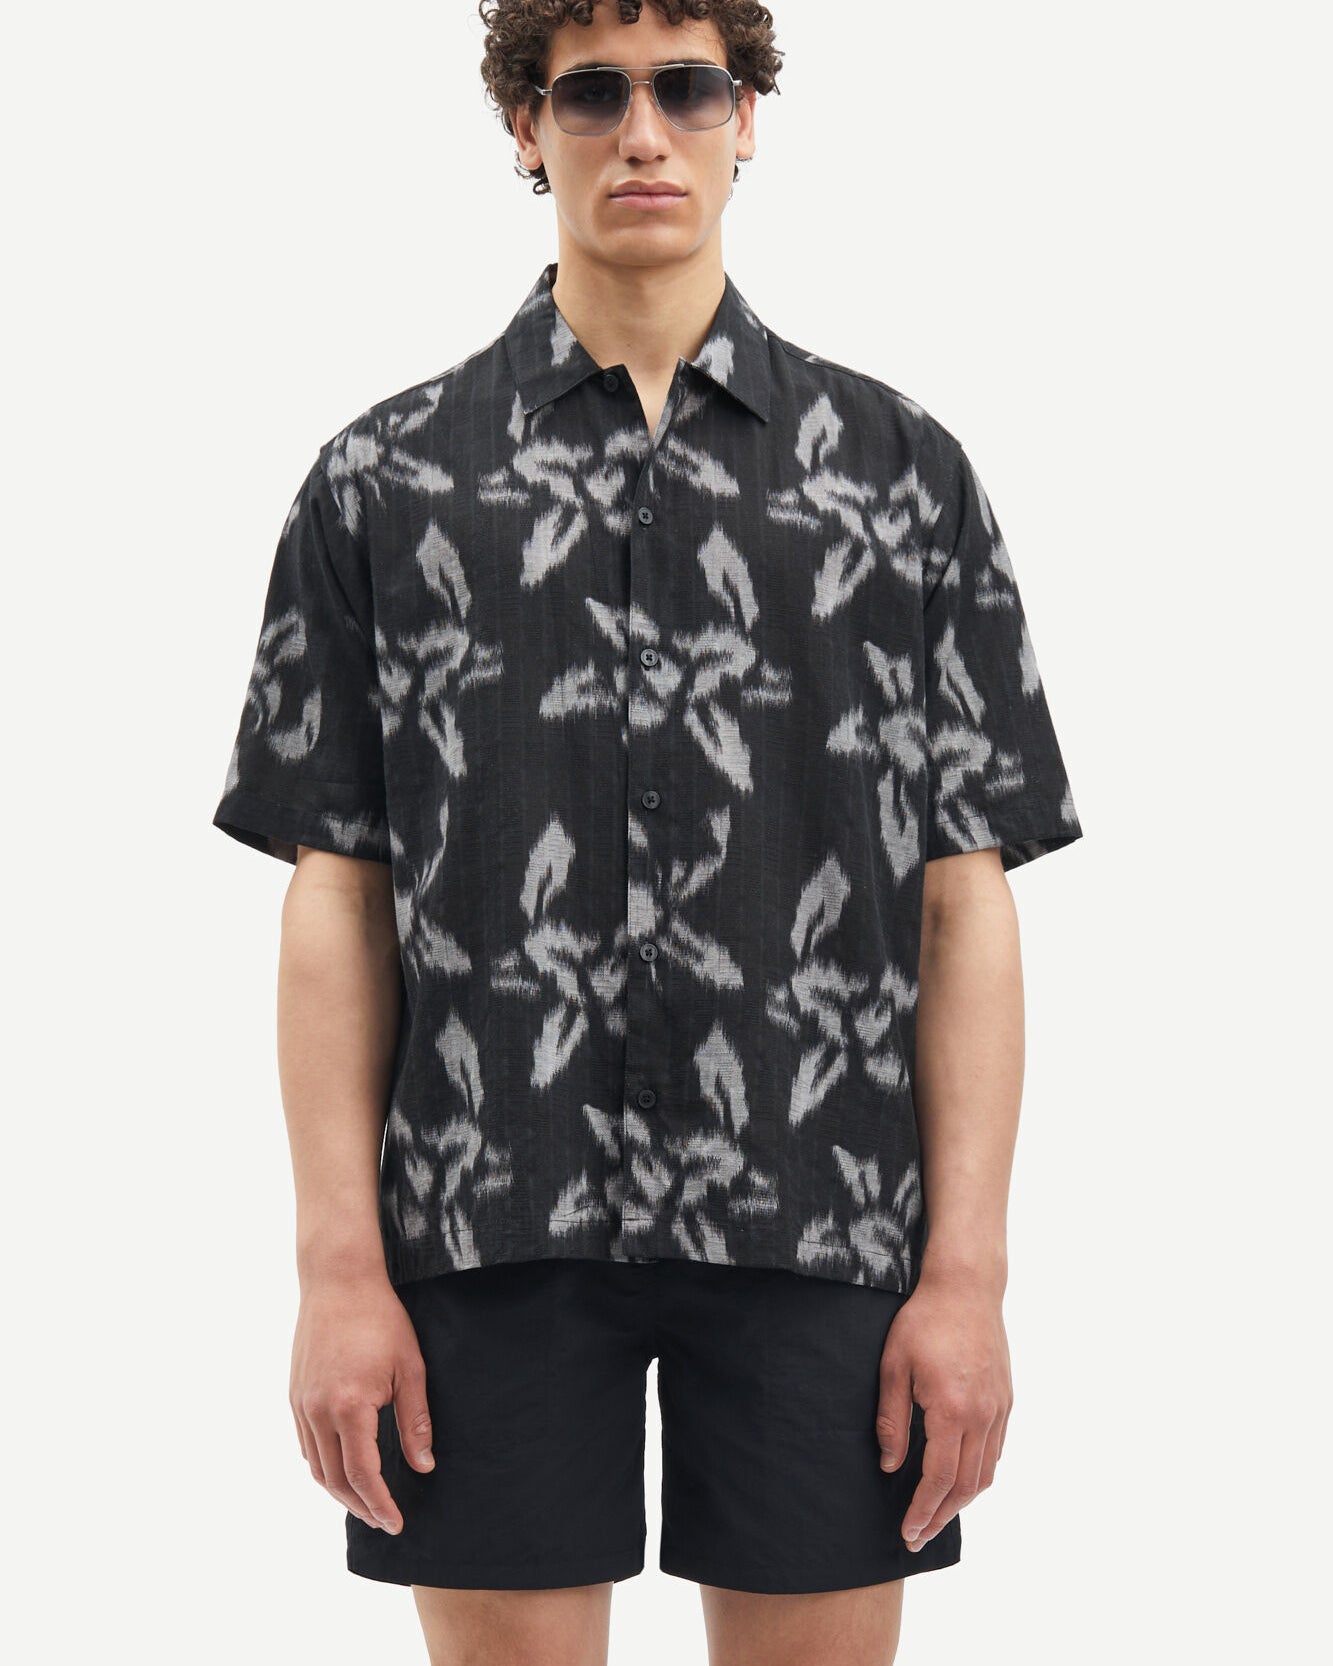 Saayo X 15142 Shirt - Orchid Moonstruck